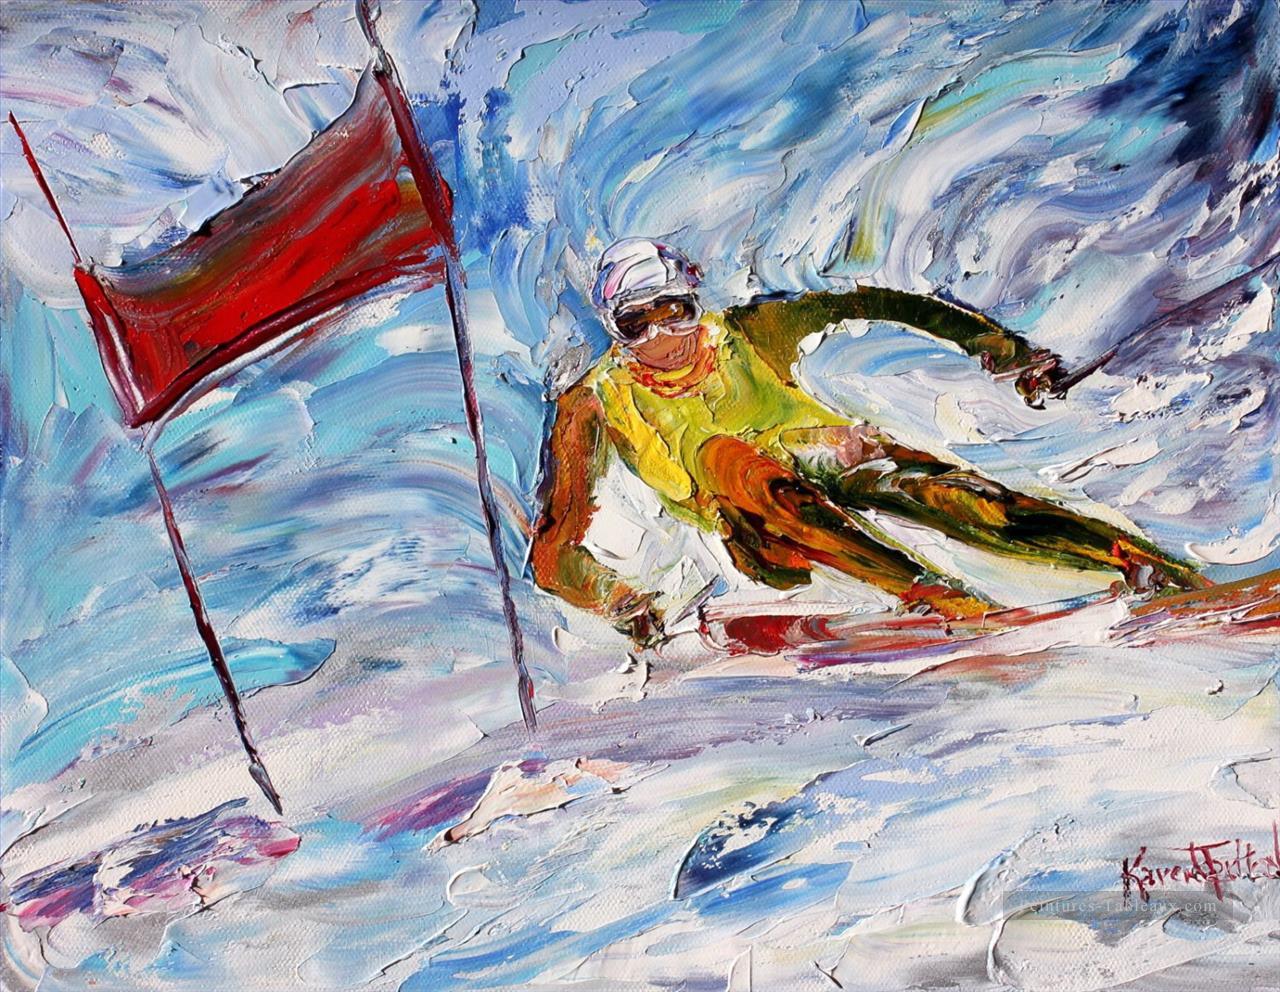 Downhill Ski Racer impressionnistes Peintures à l'huile